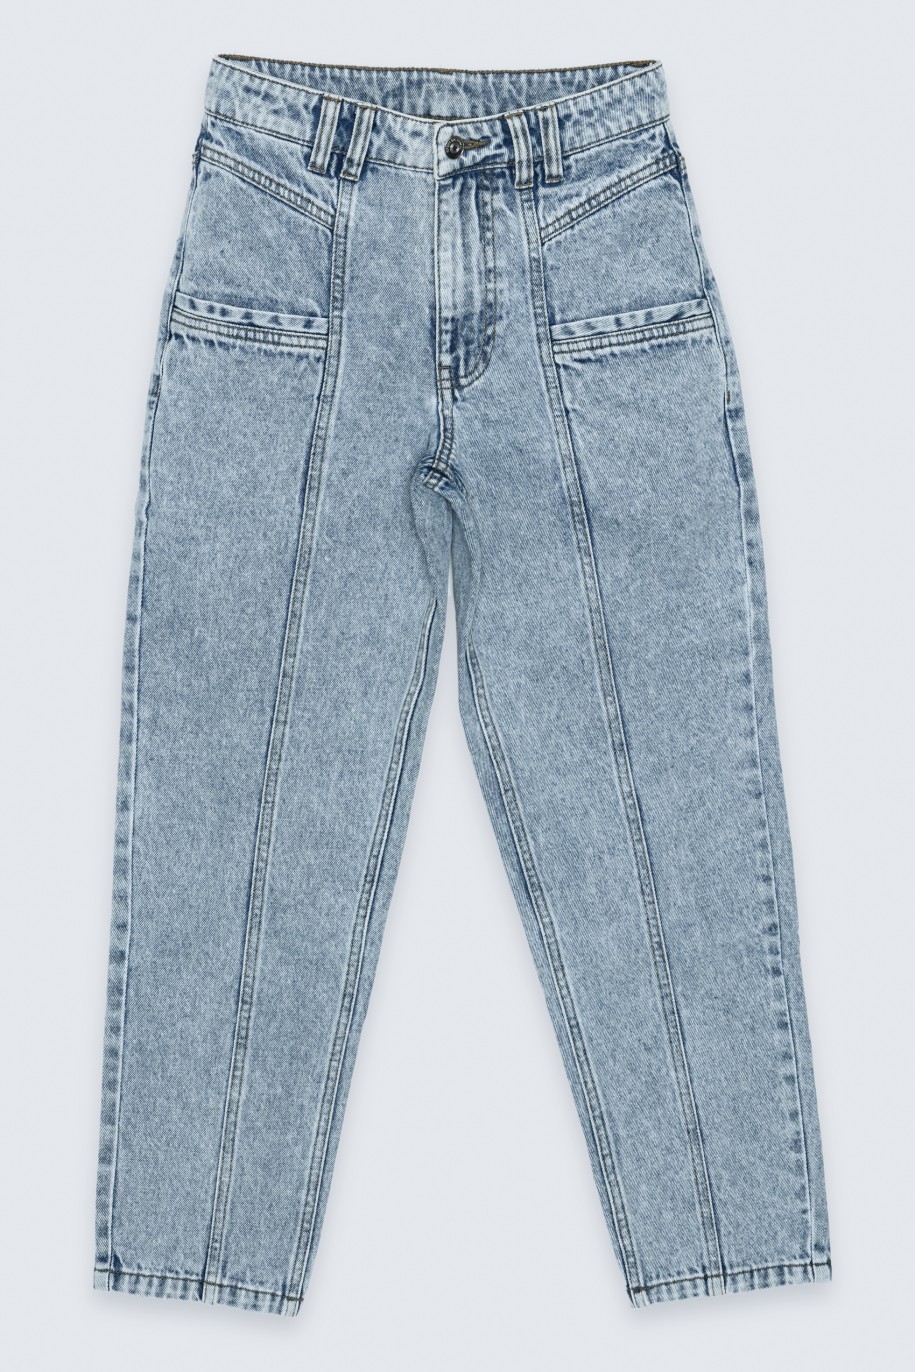 Niebieskie jeansy typu mom fit z przeszyciami - 36666